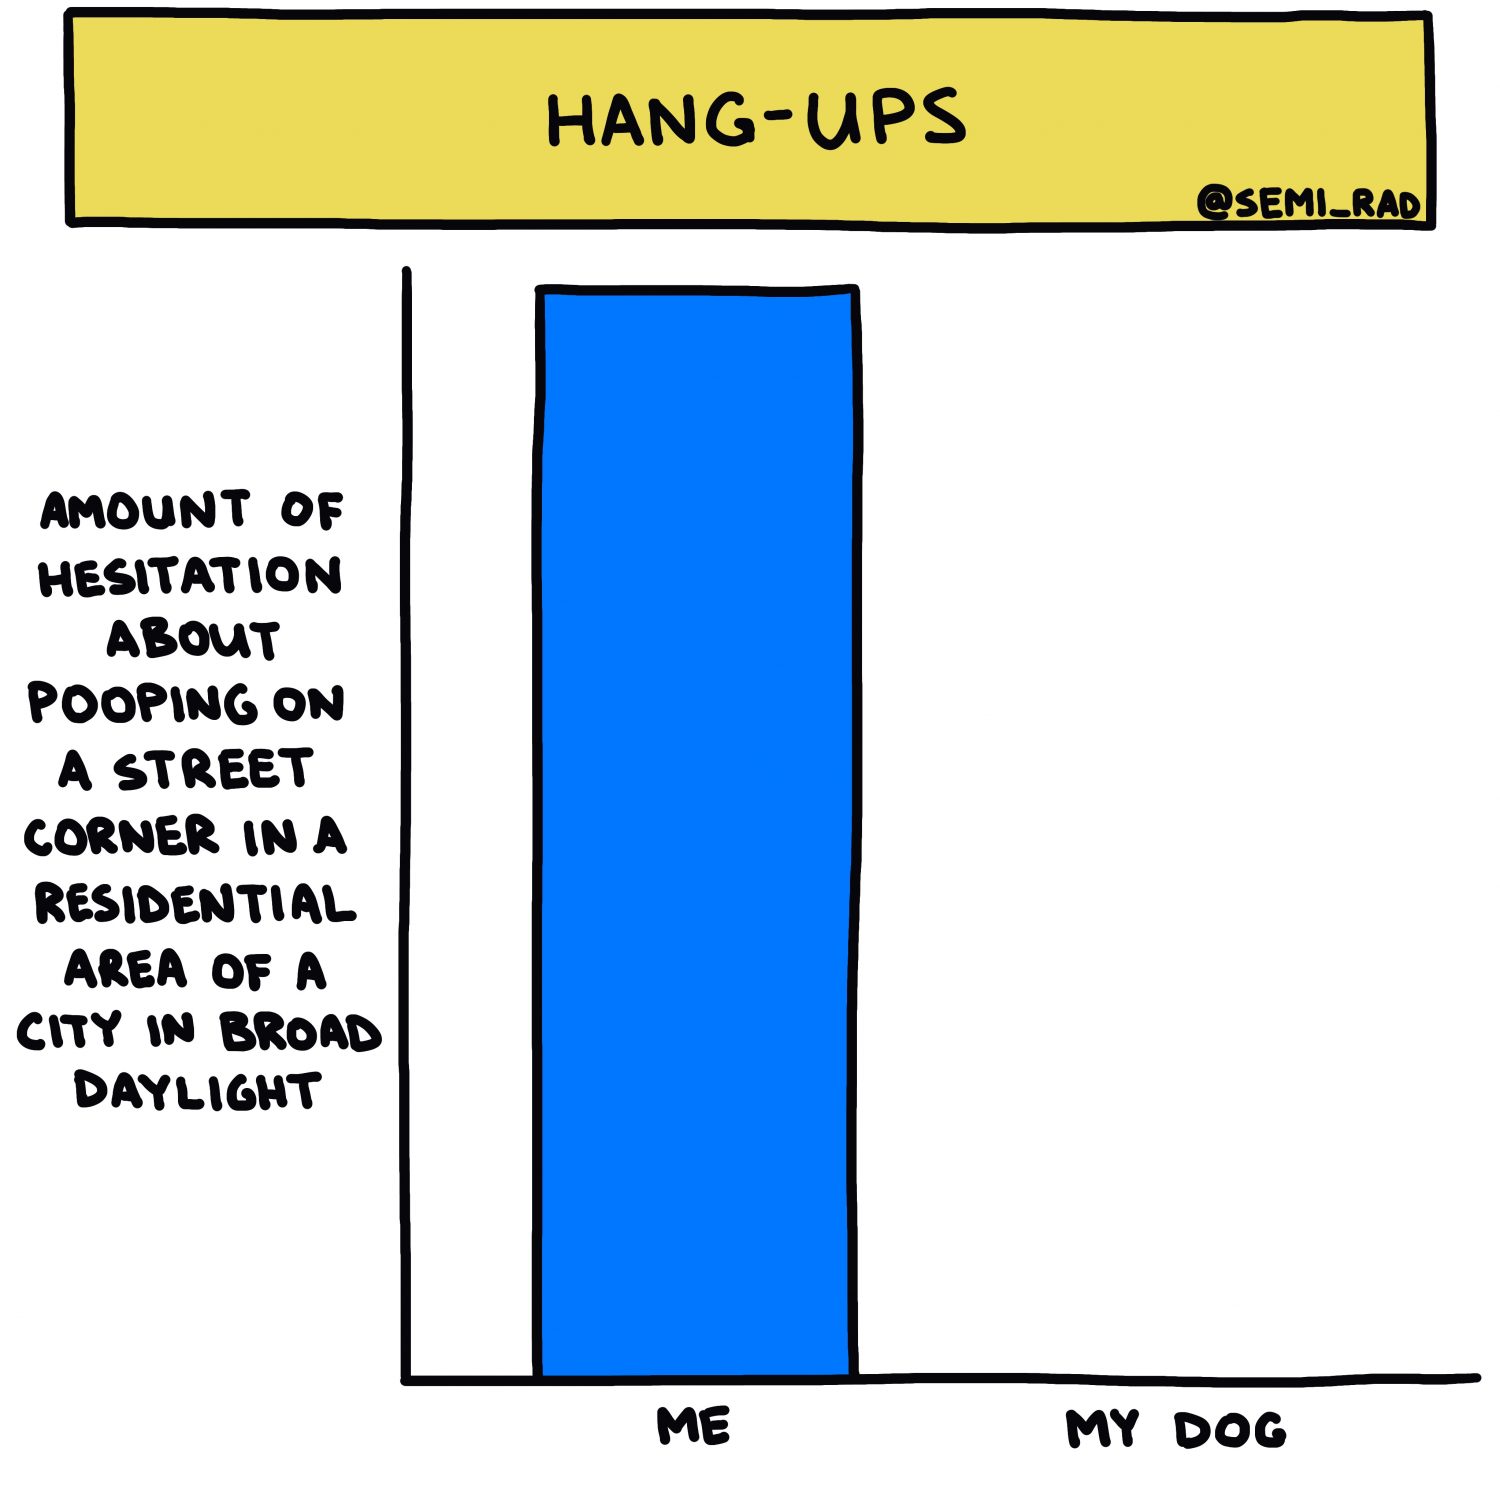 Hang-Ups: My Dog Vs. Me